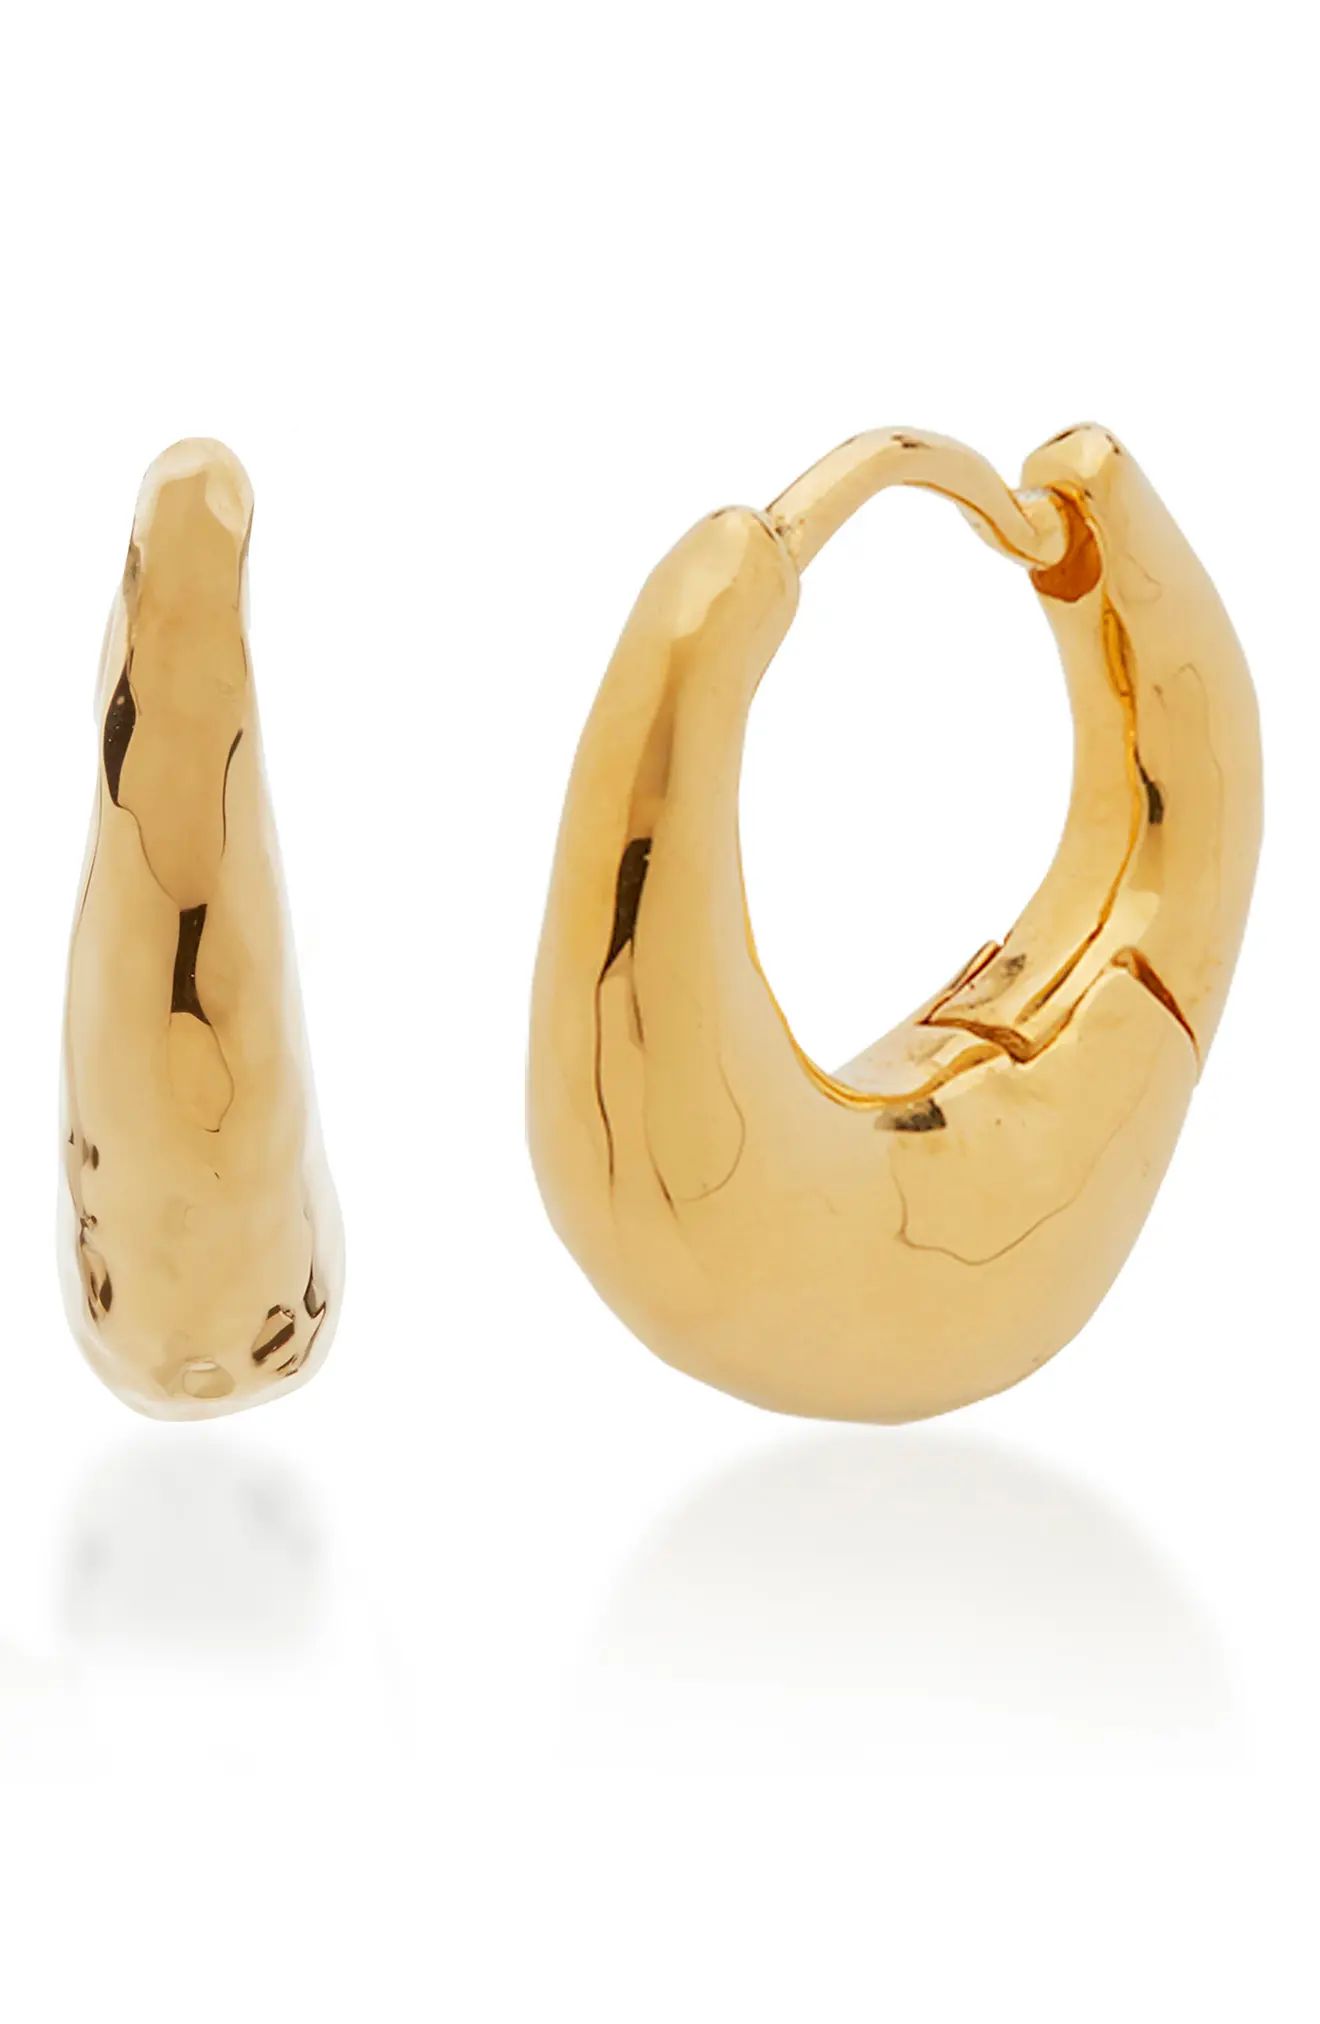 Monica Vinader Deia Huggie Hoop Earrings in Yellow Gold at Nordstrom | Nordstrom